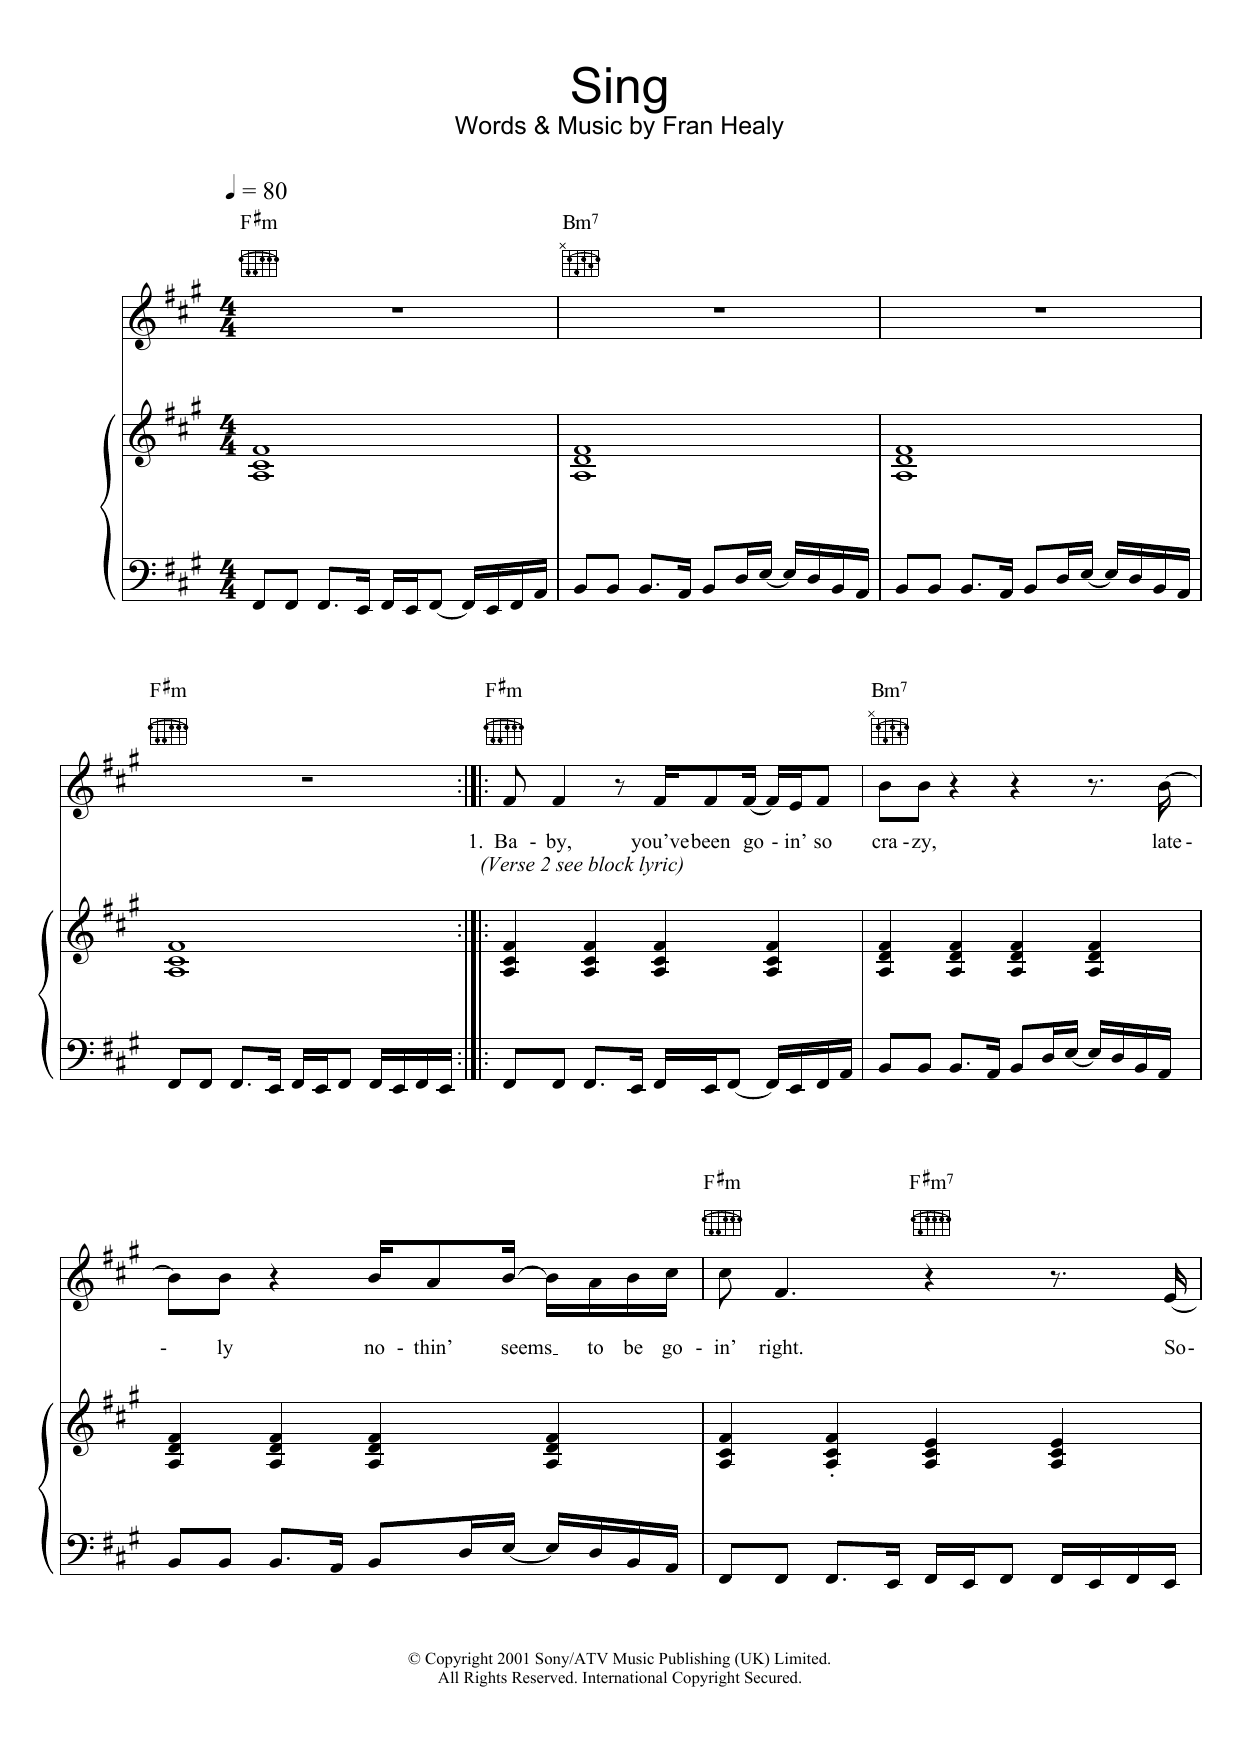 Travis Sing Sheet Music Notes & Chords for Banjo Lyrics & Chords - Download or Print PDF